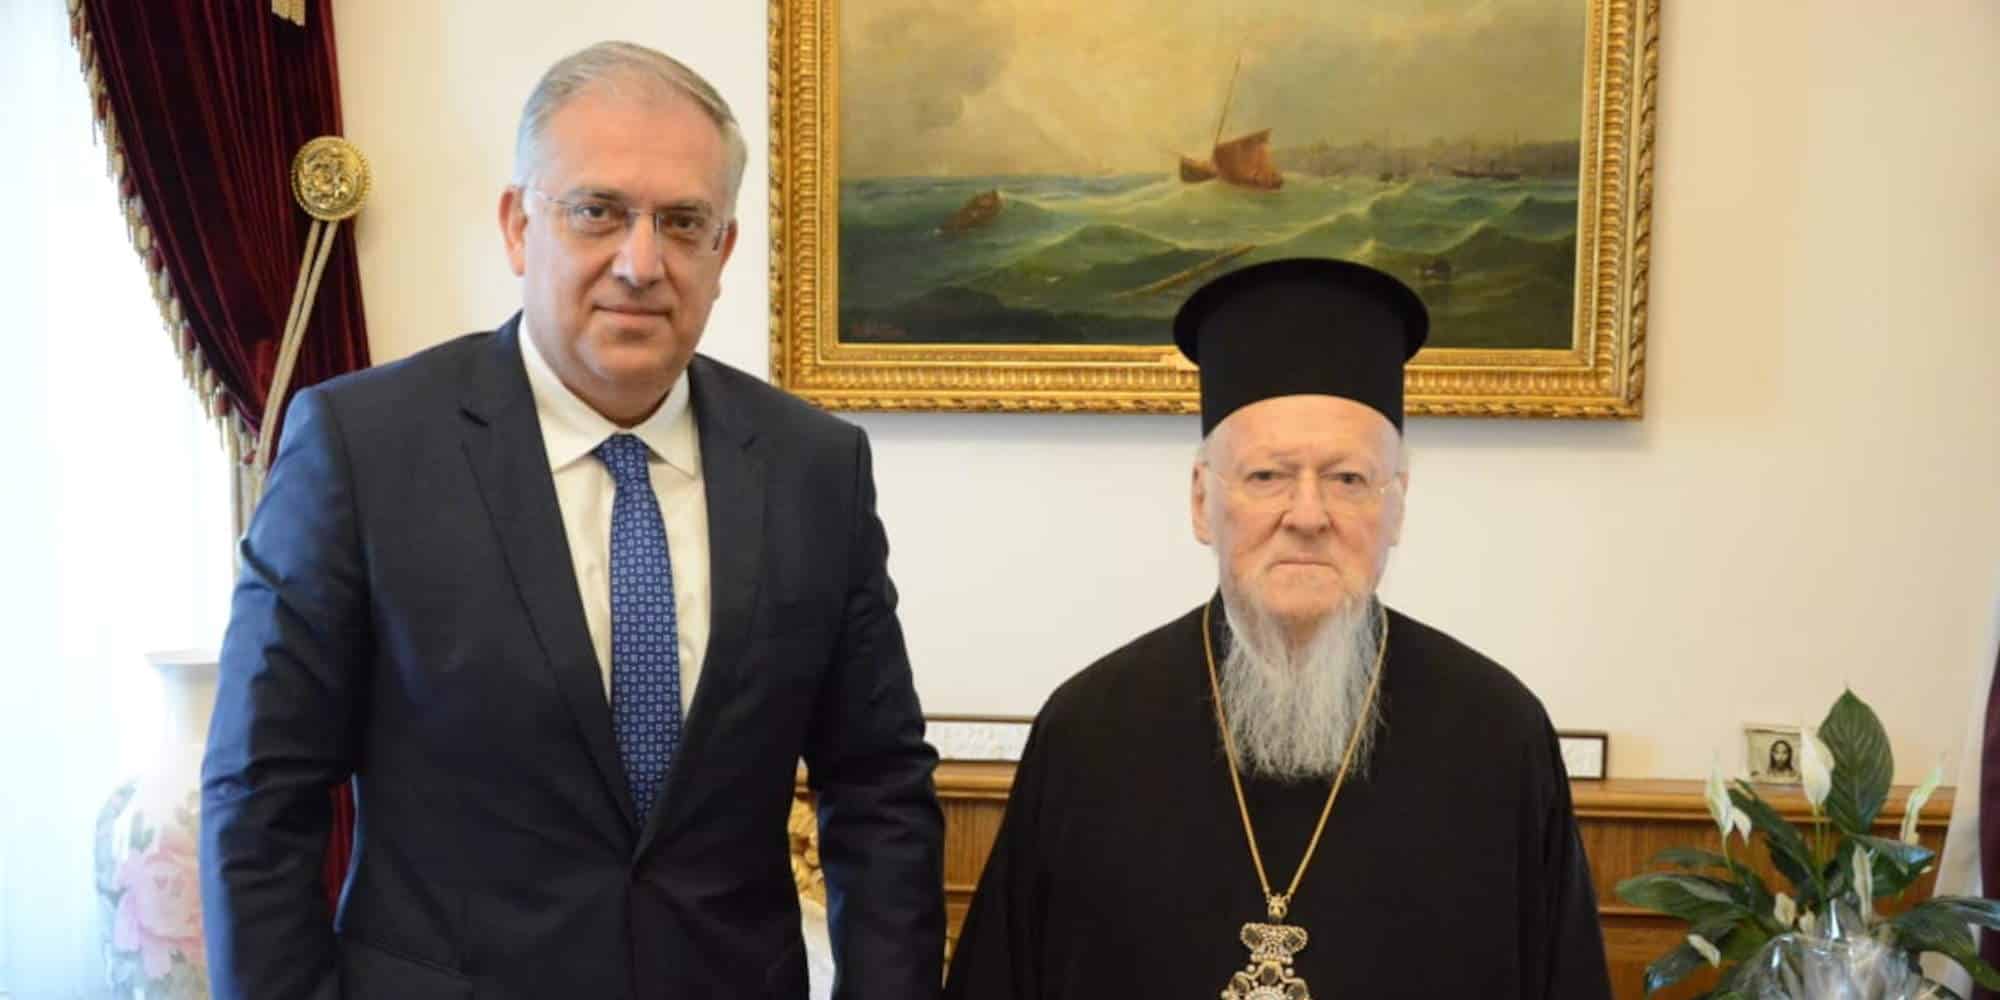 Ο υπουργός Προστασίας του Πολίτη Τάκης Θεοδωρικάκος με τον Οικουμενικό Πατριάρχη